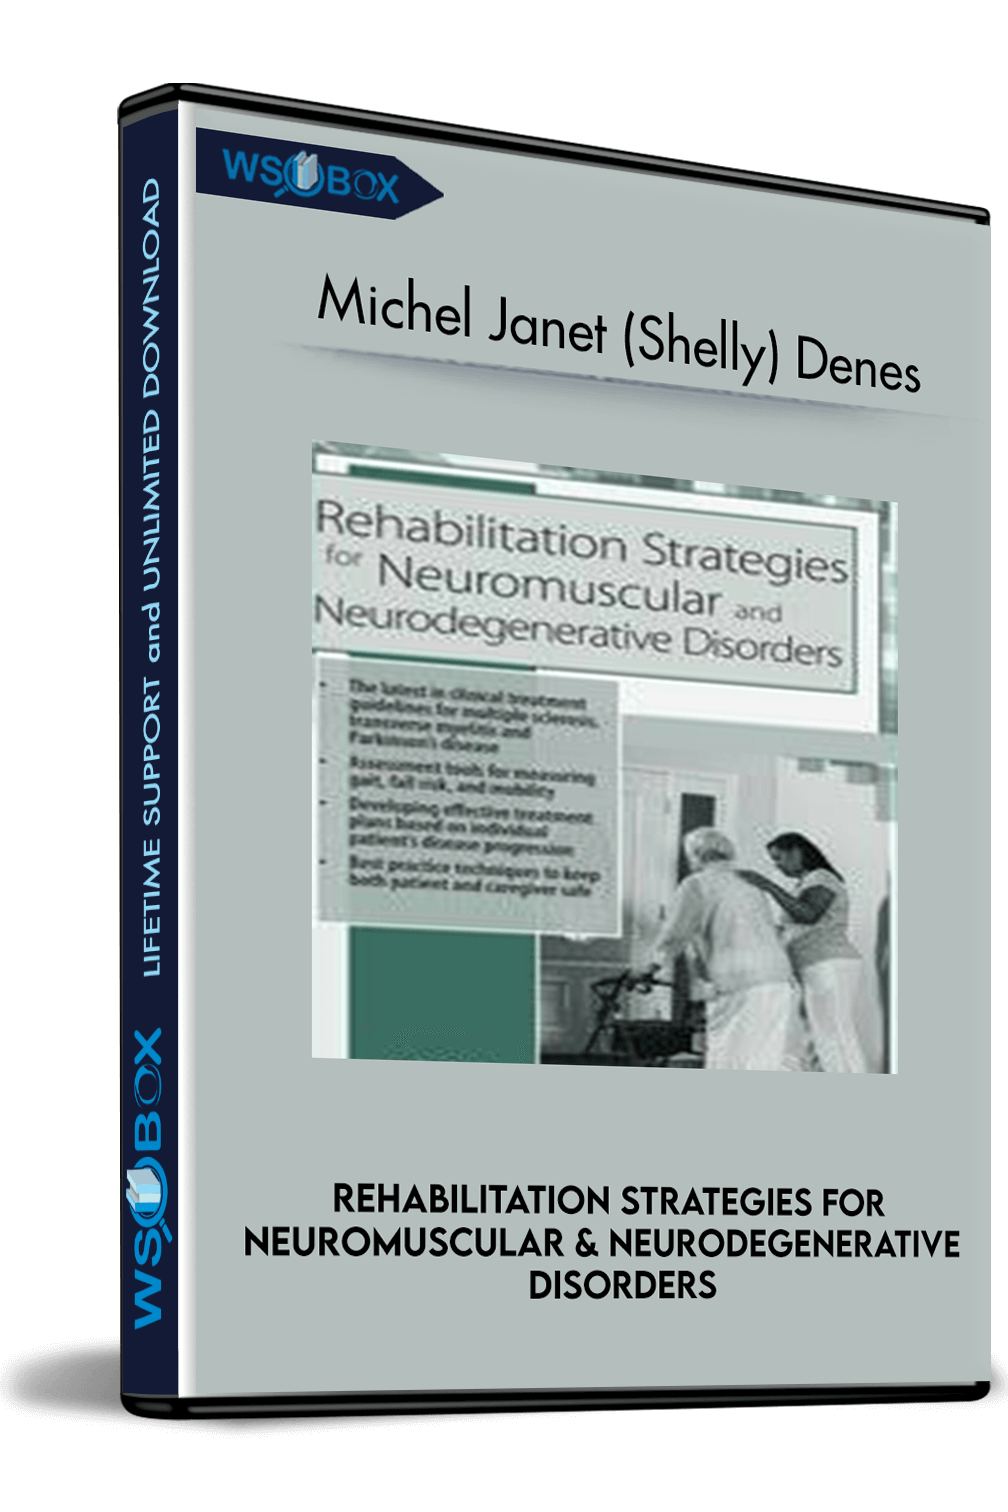 rehabilitation-strategies-for-neuromuscular-neurodegenerative-disorders-michel-janet-shelly-denes